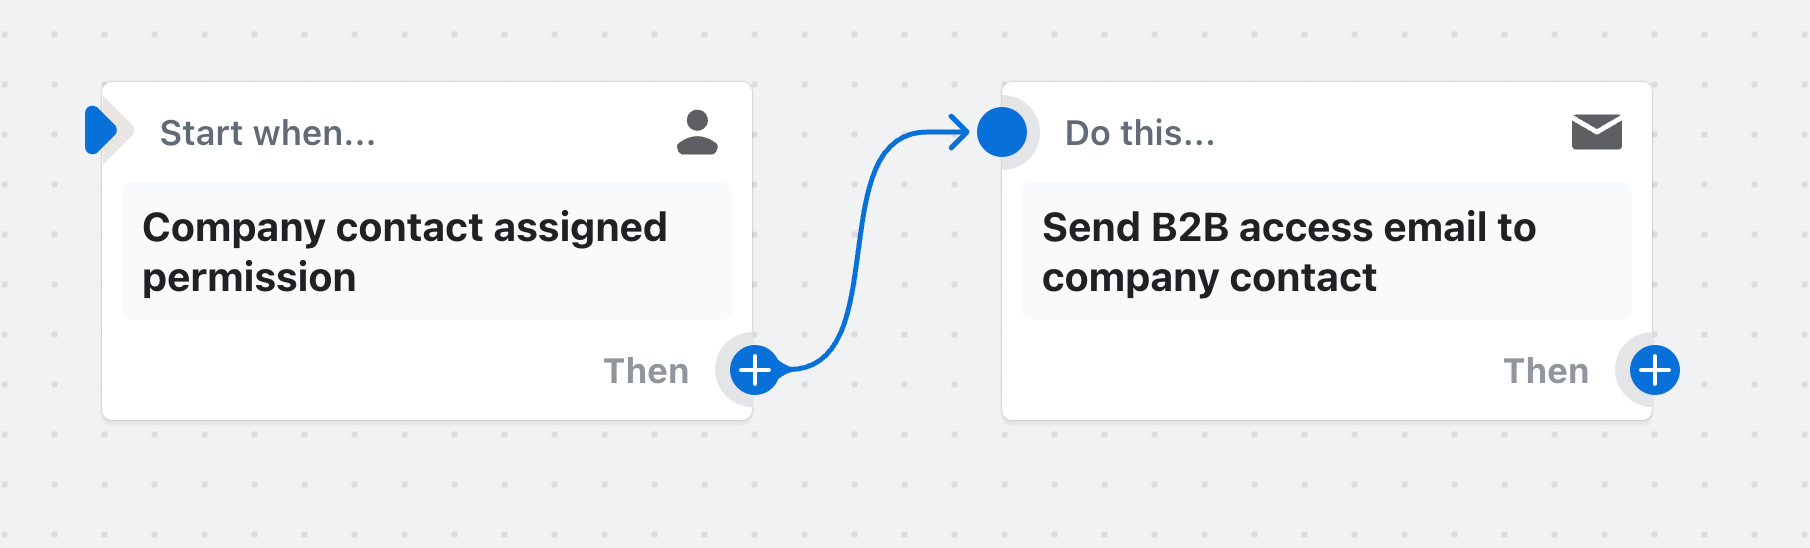 Eksempel på et workflow, der sender en mail om B2B-adgang, når en firmakontakt får tildelt en tilladelse